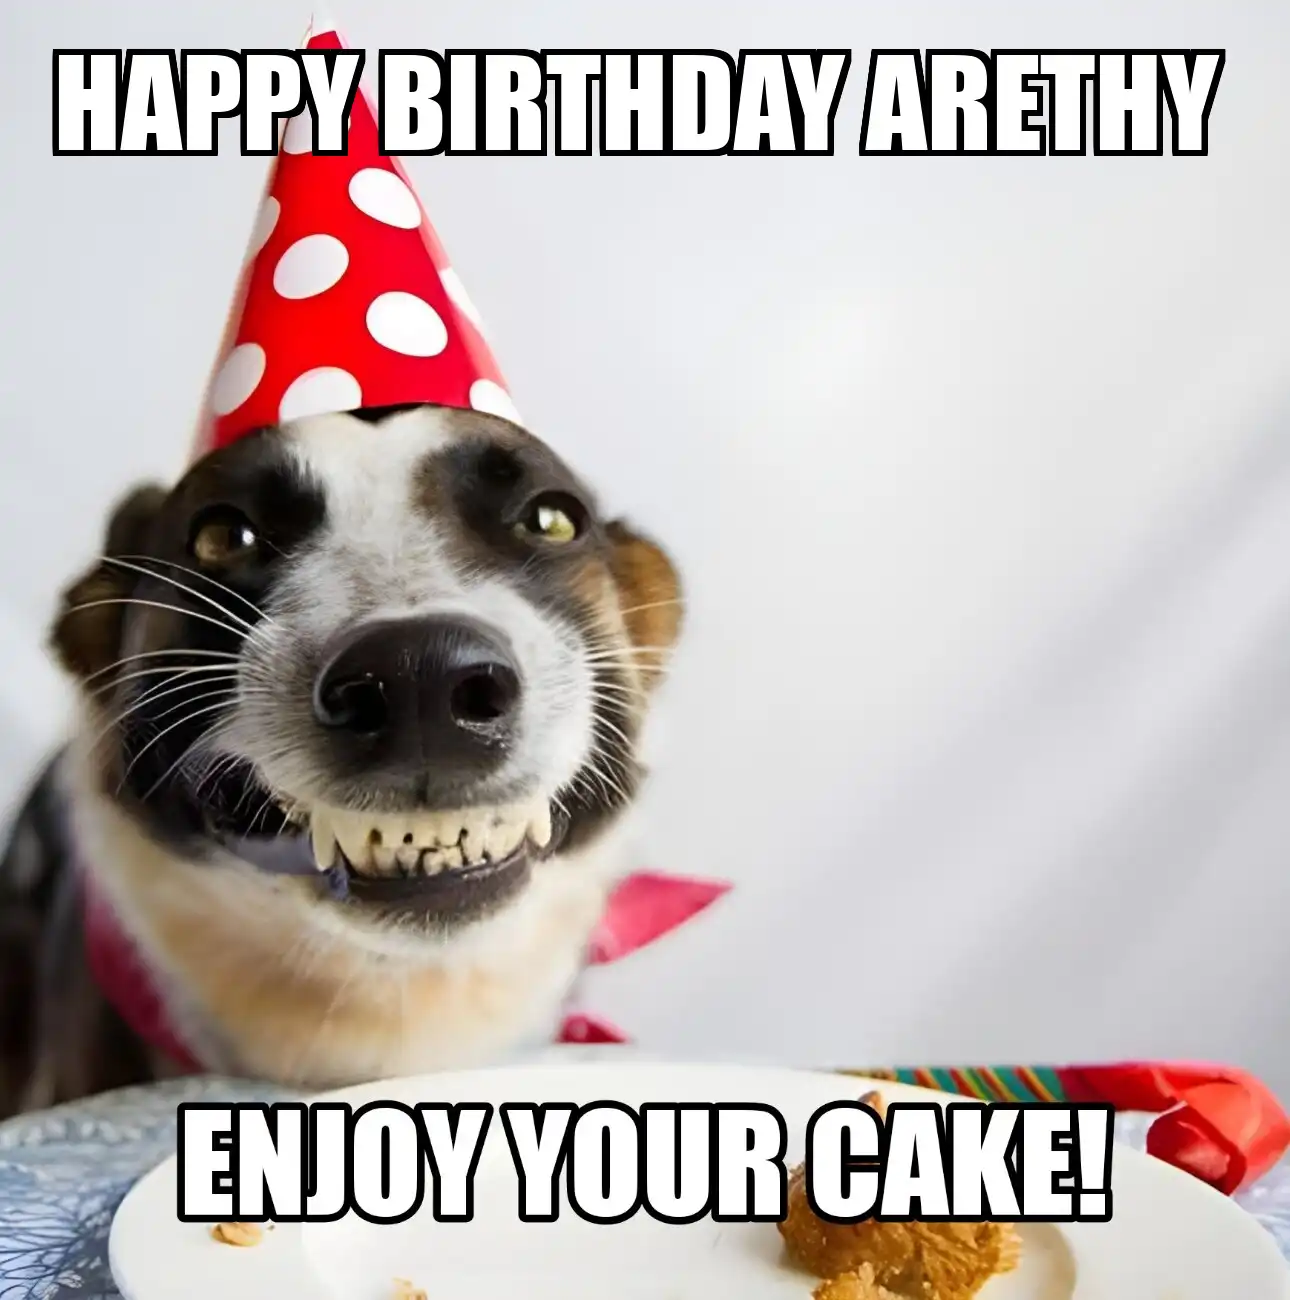 Happy Birthday Arethy Enjoy Your Cake Dog Meme